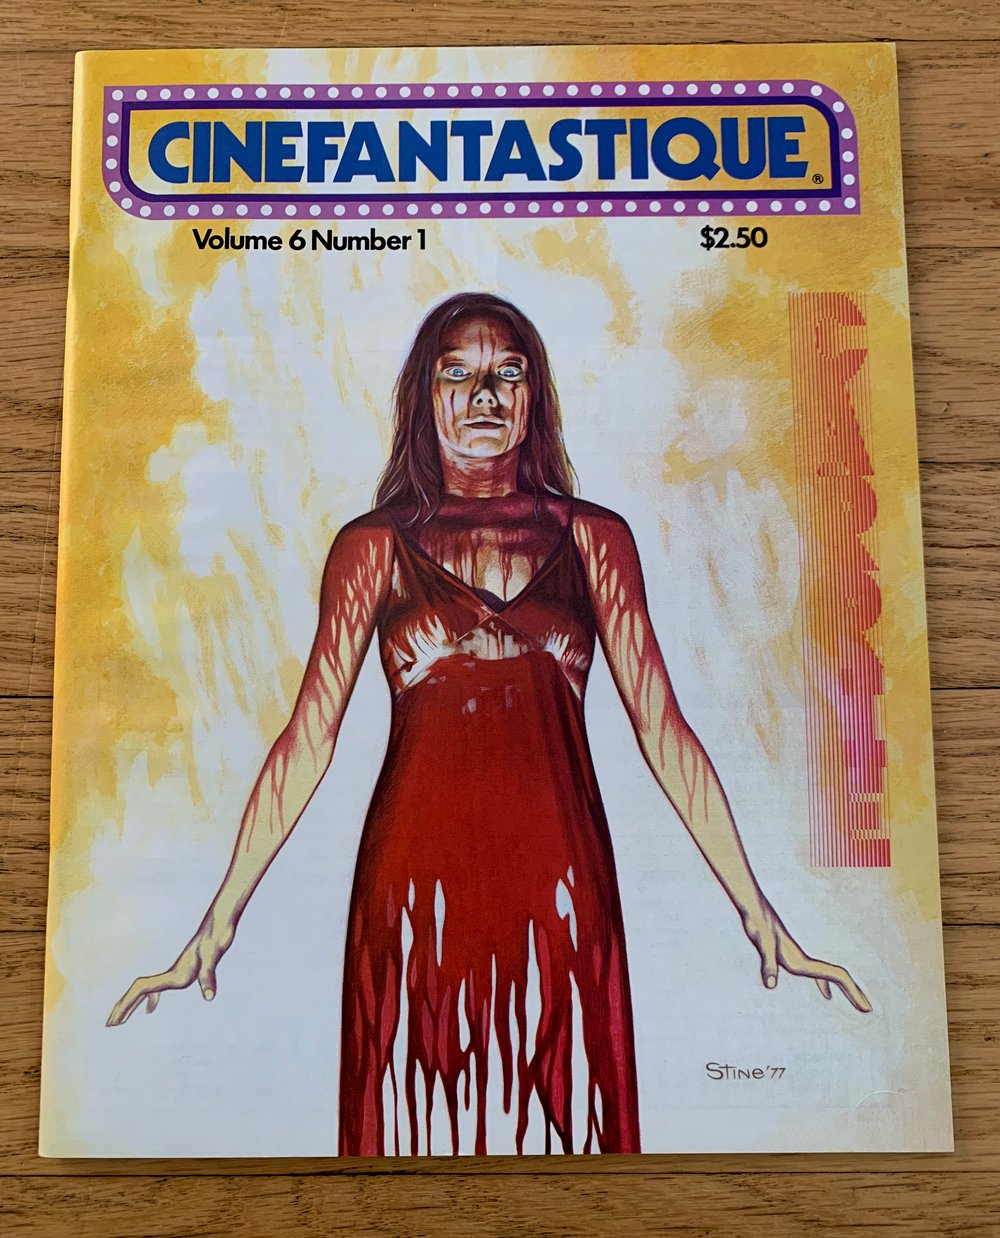 CINEFANTASTIQUE Volume 6 Number 1 Summer 1977 CARRIE